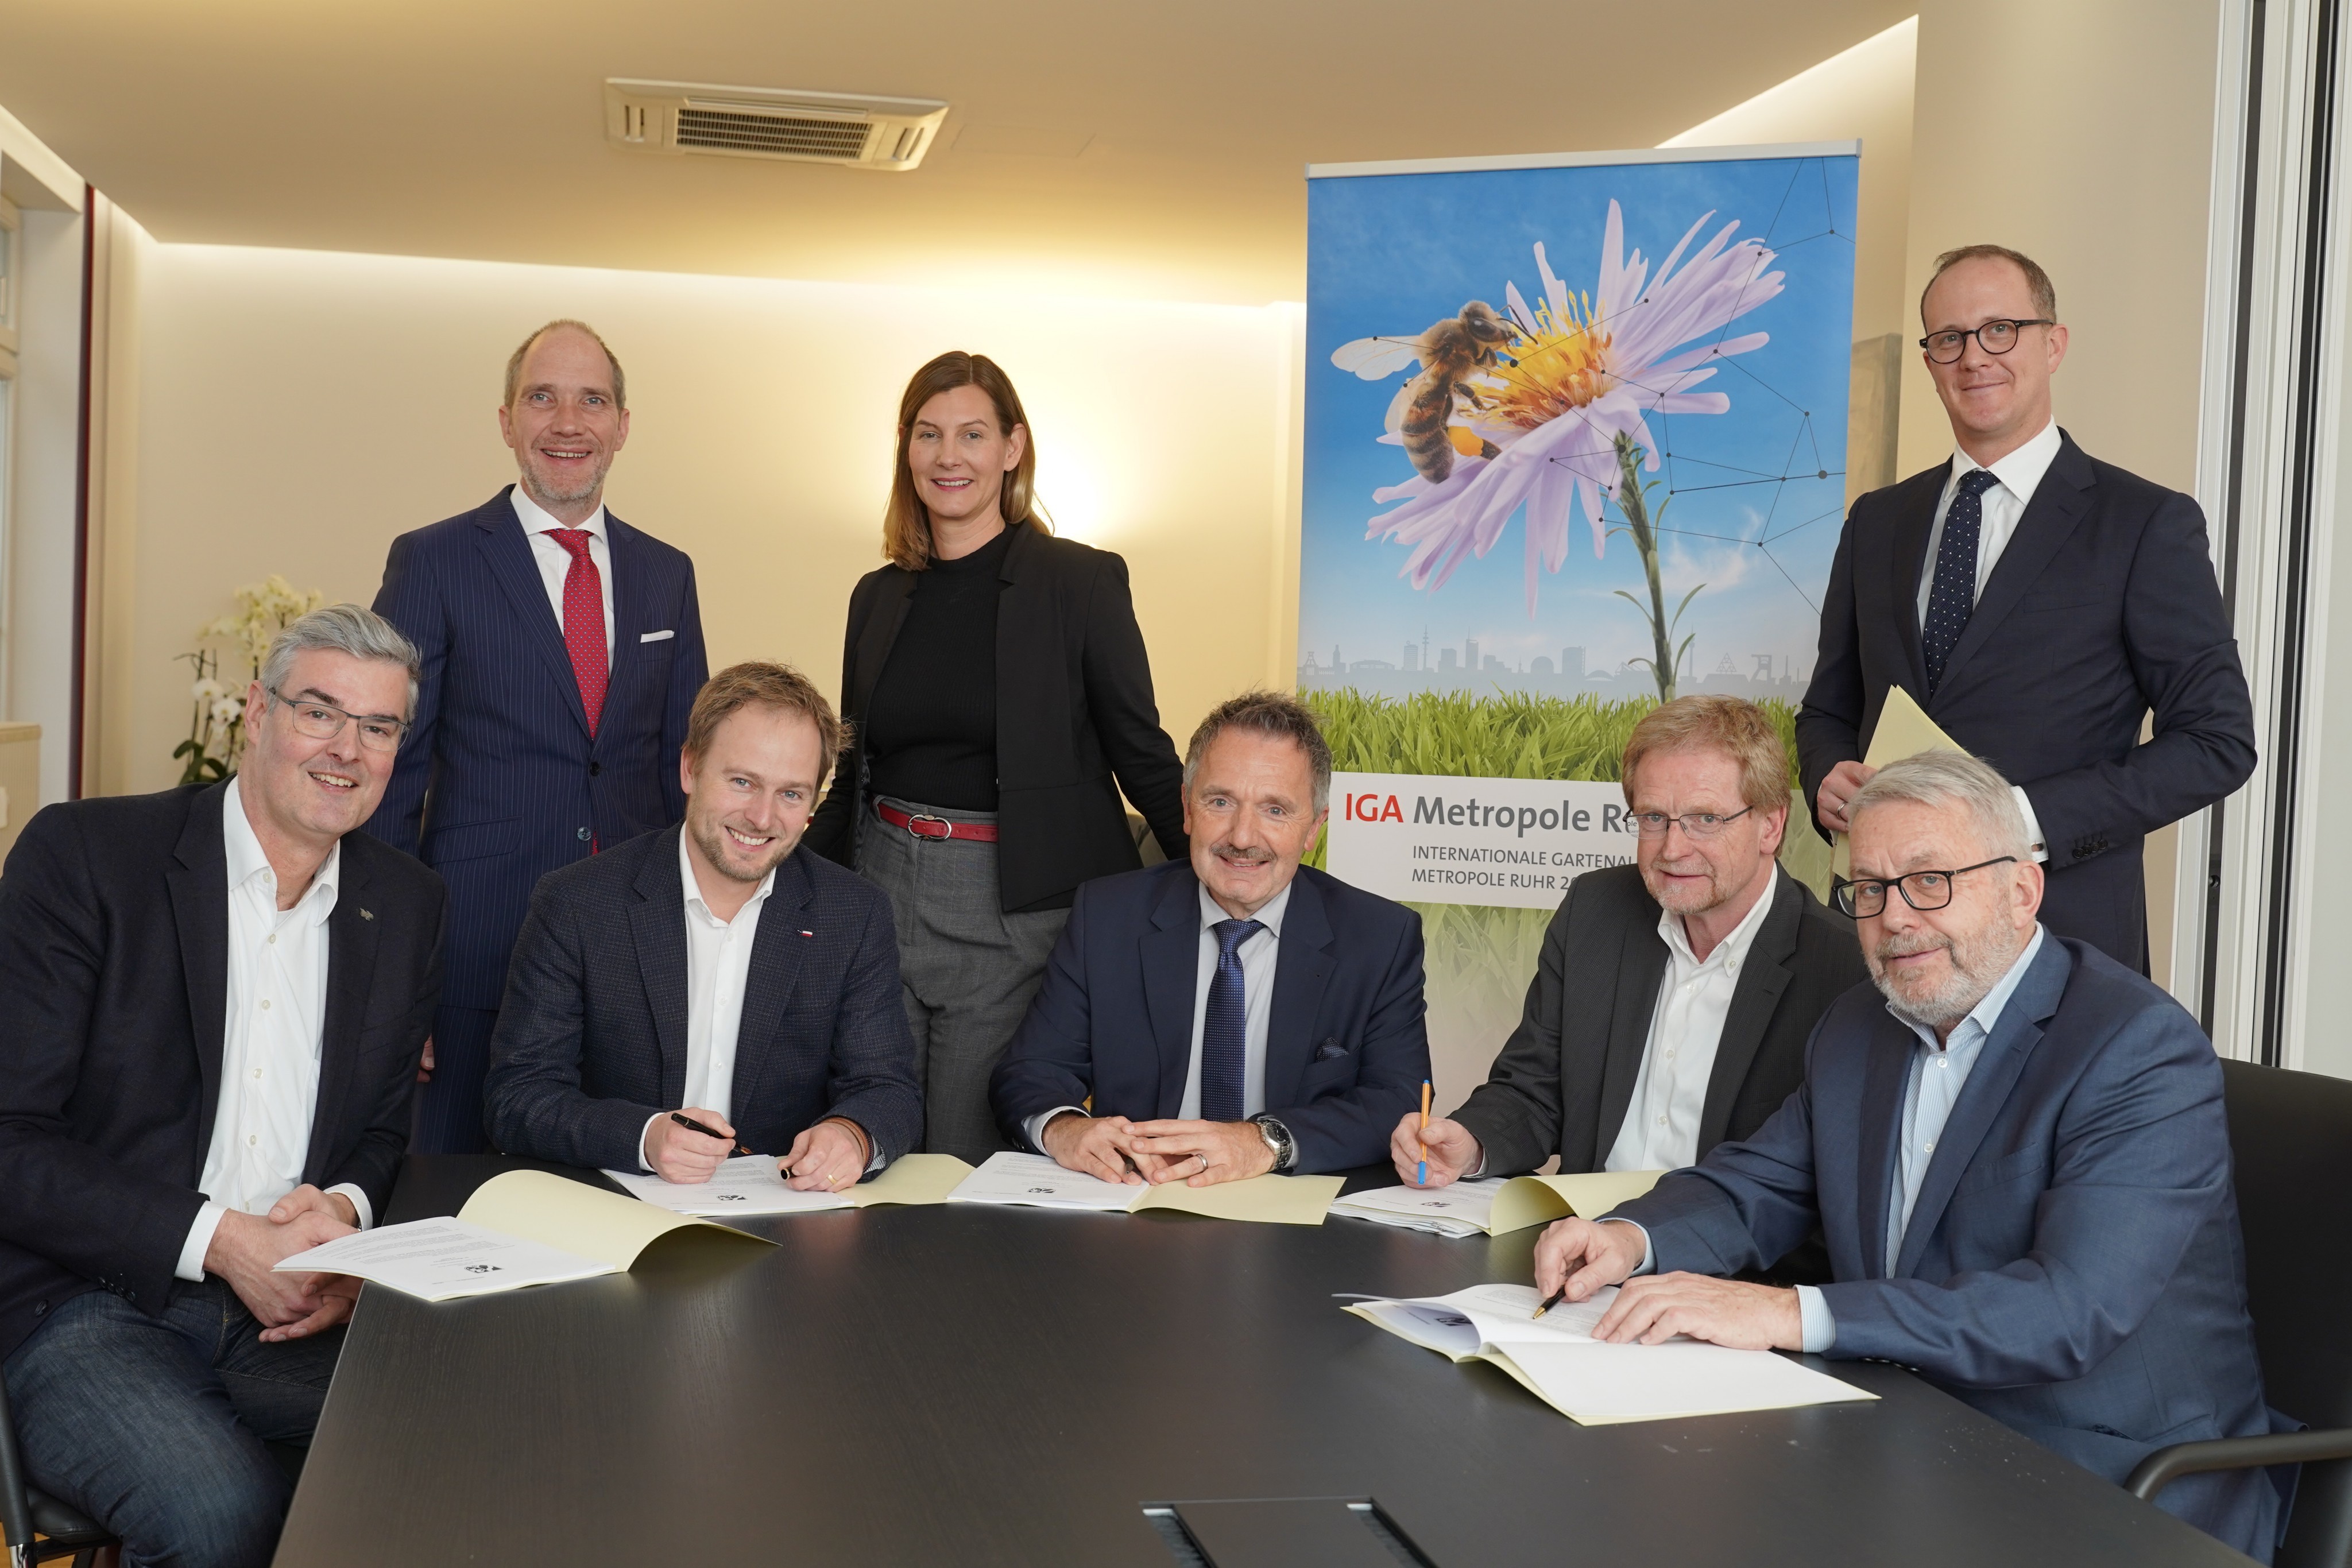 Vertragsunterzeichnung für die IGA Metropole Ruhr 2027 gGmbH am 20. Dezember 2019 in Essen.